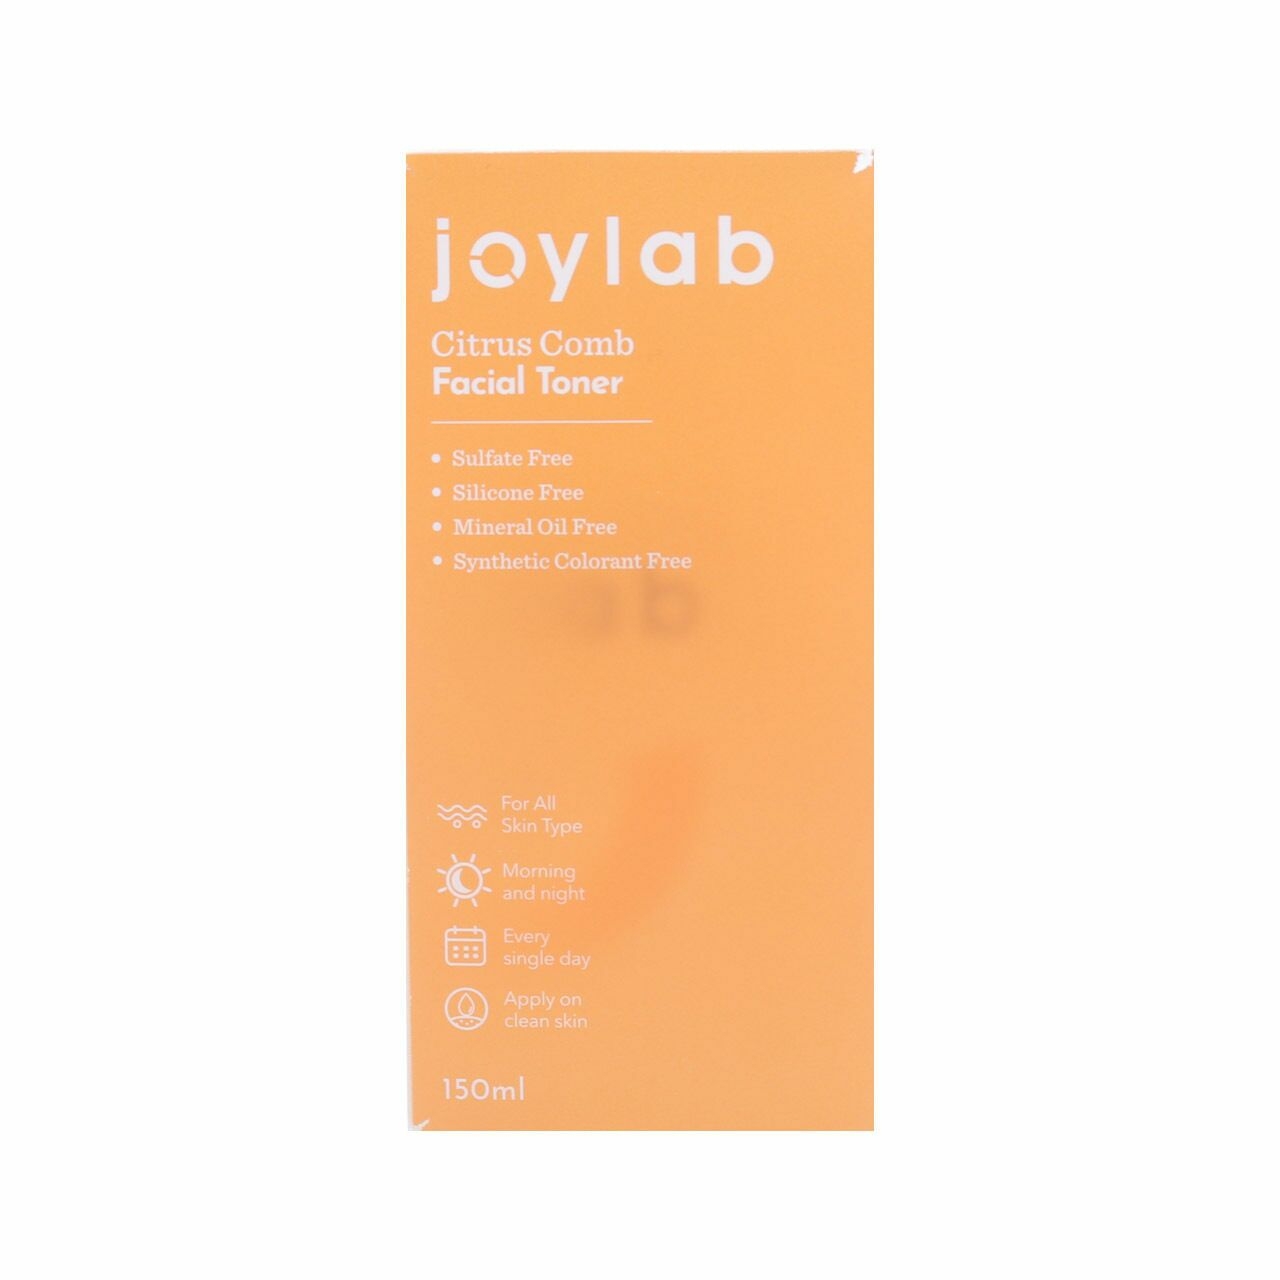 joylab Citrus Comb Facial Toner Skin Care